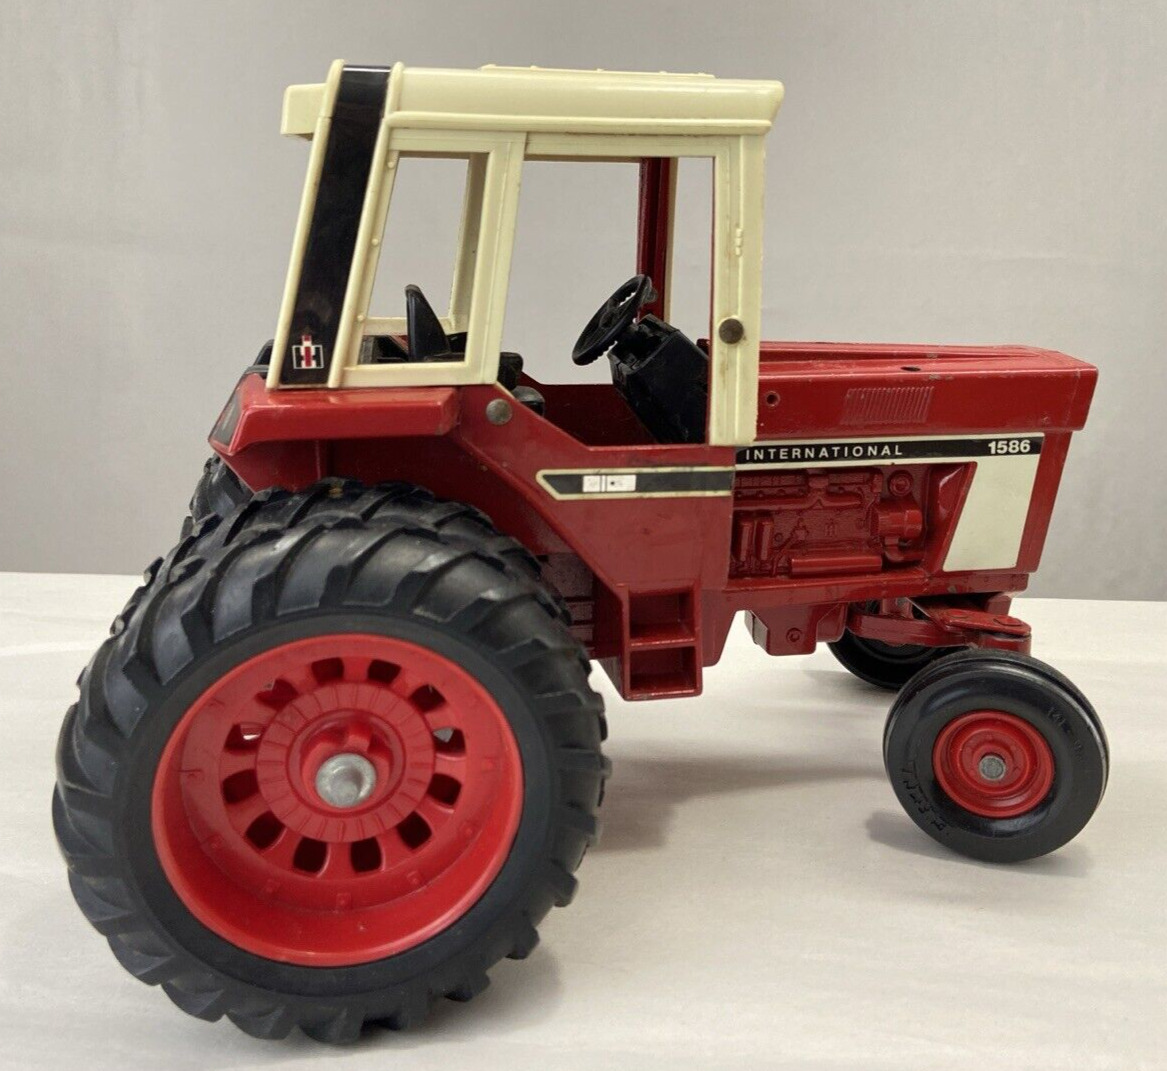 VTG ERTL Toy Tractor International Harvester 1586 Die Cast Metal-Cab -Red -Gift